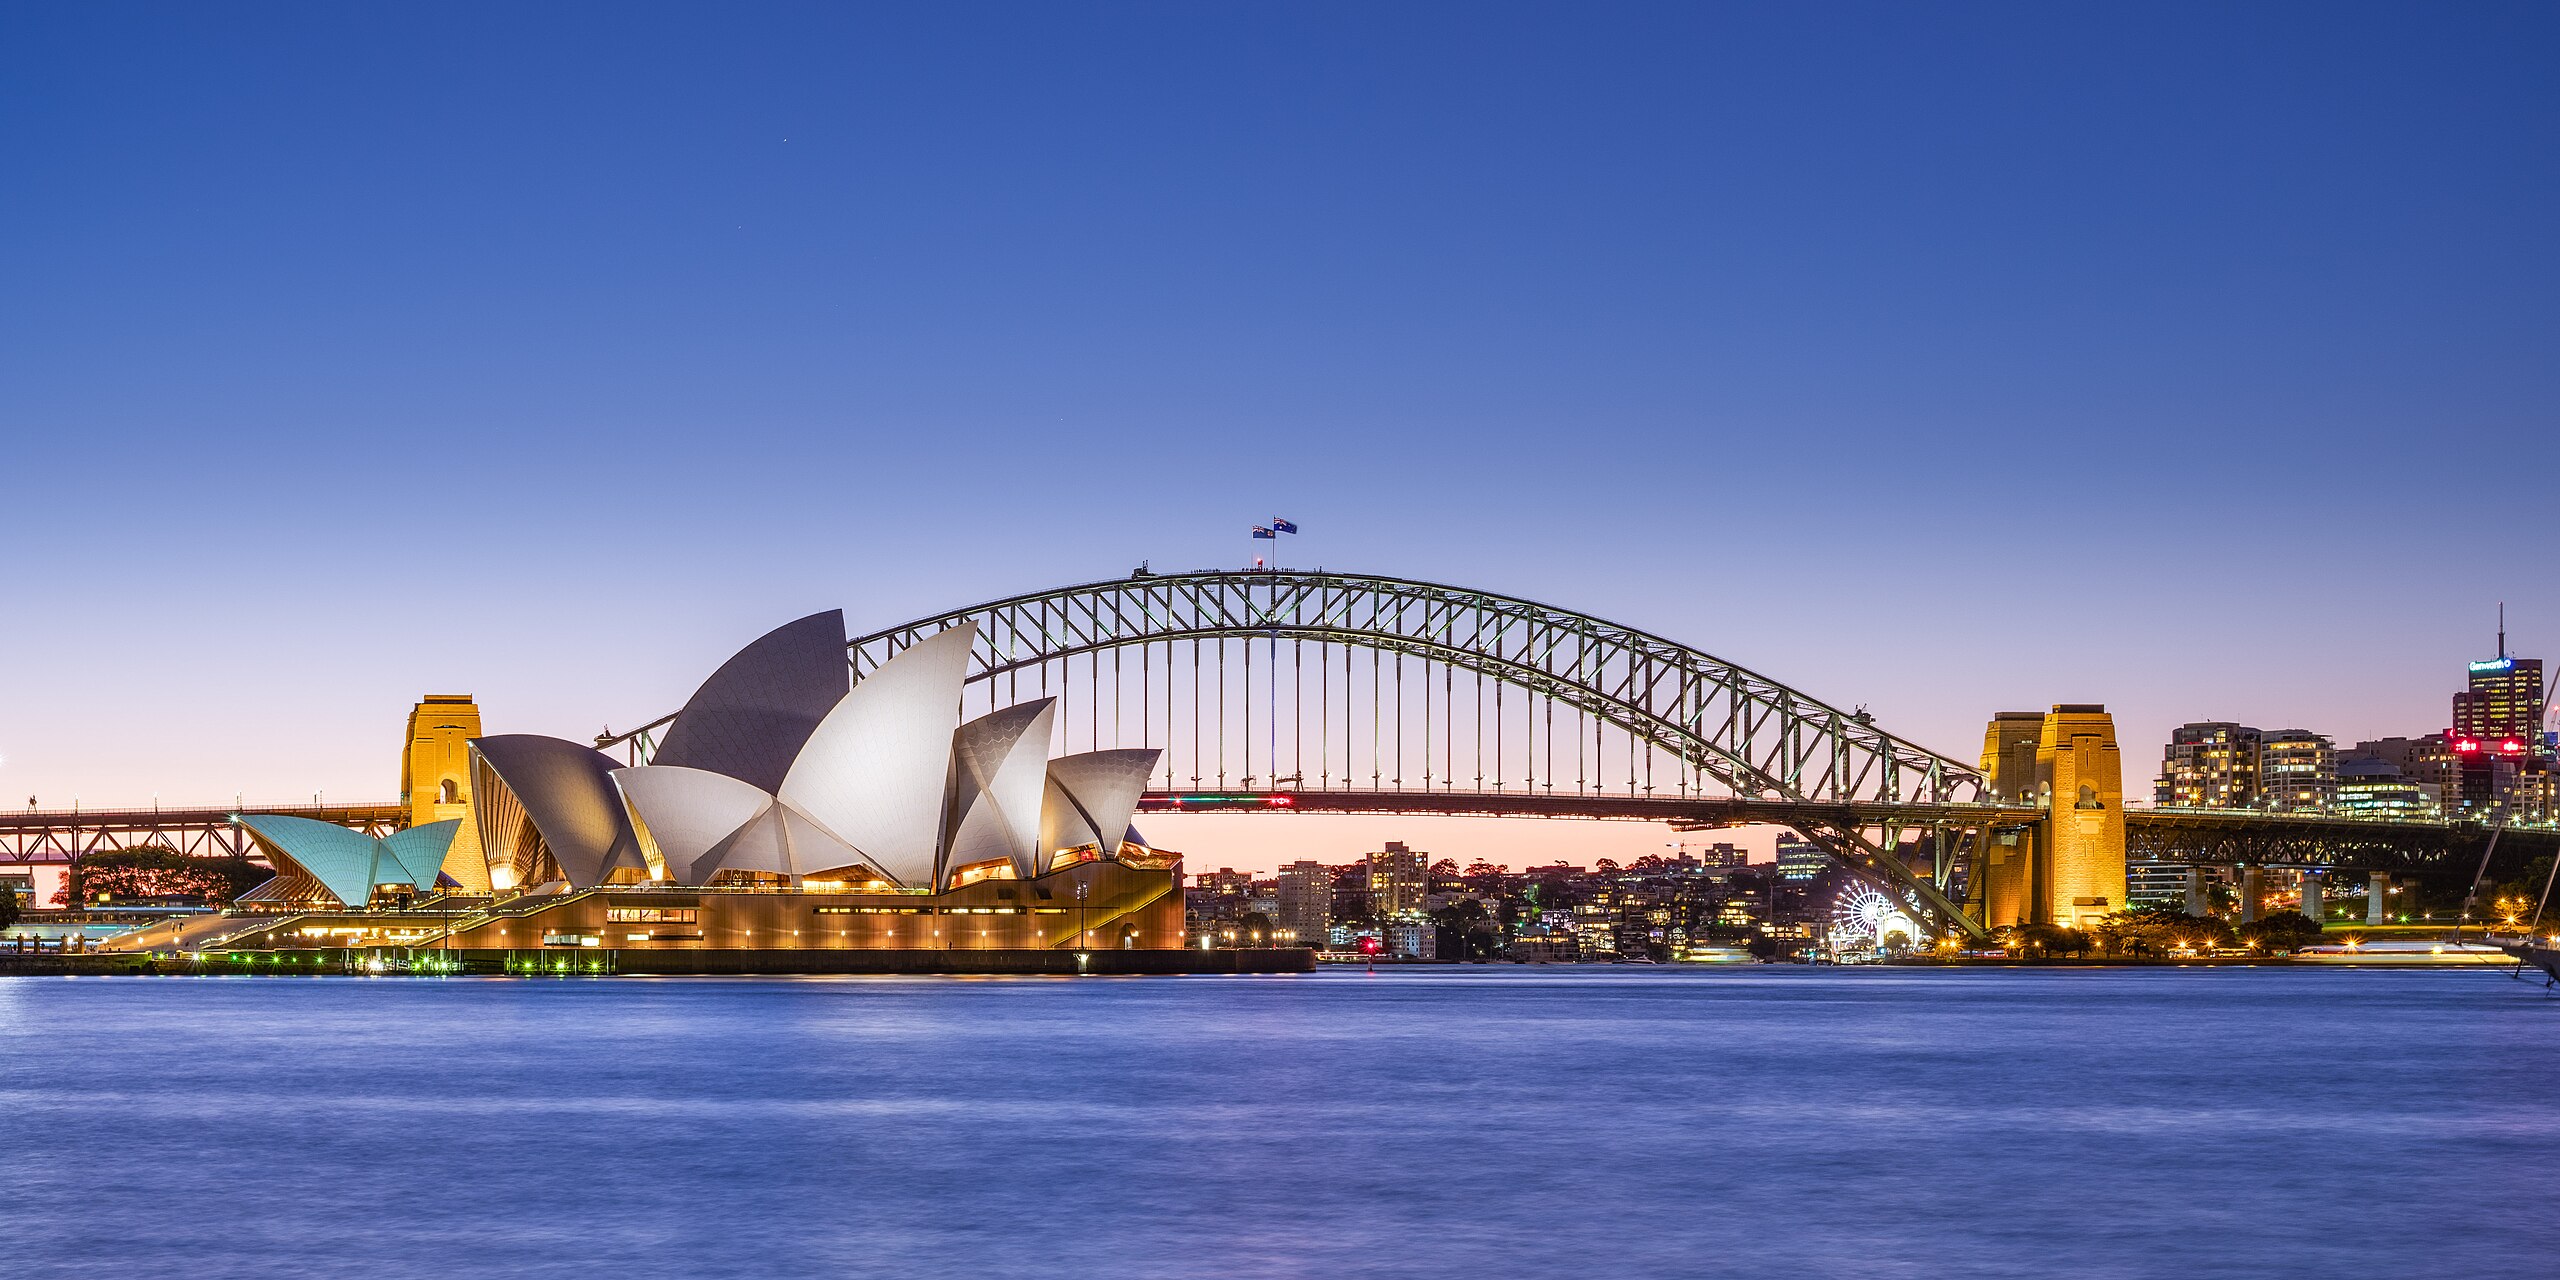 Сидней – столица Австралии? Только 10% правильно назовут все 5/5 столиц: тест